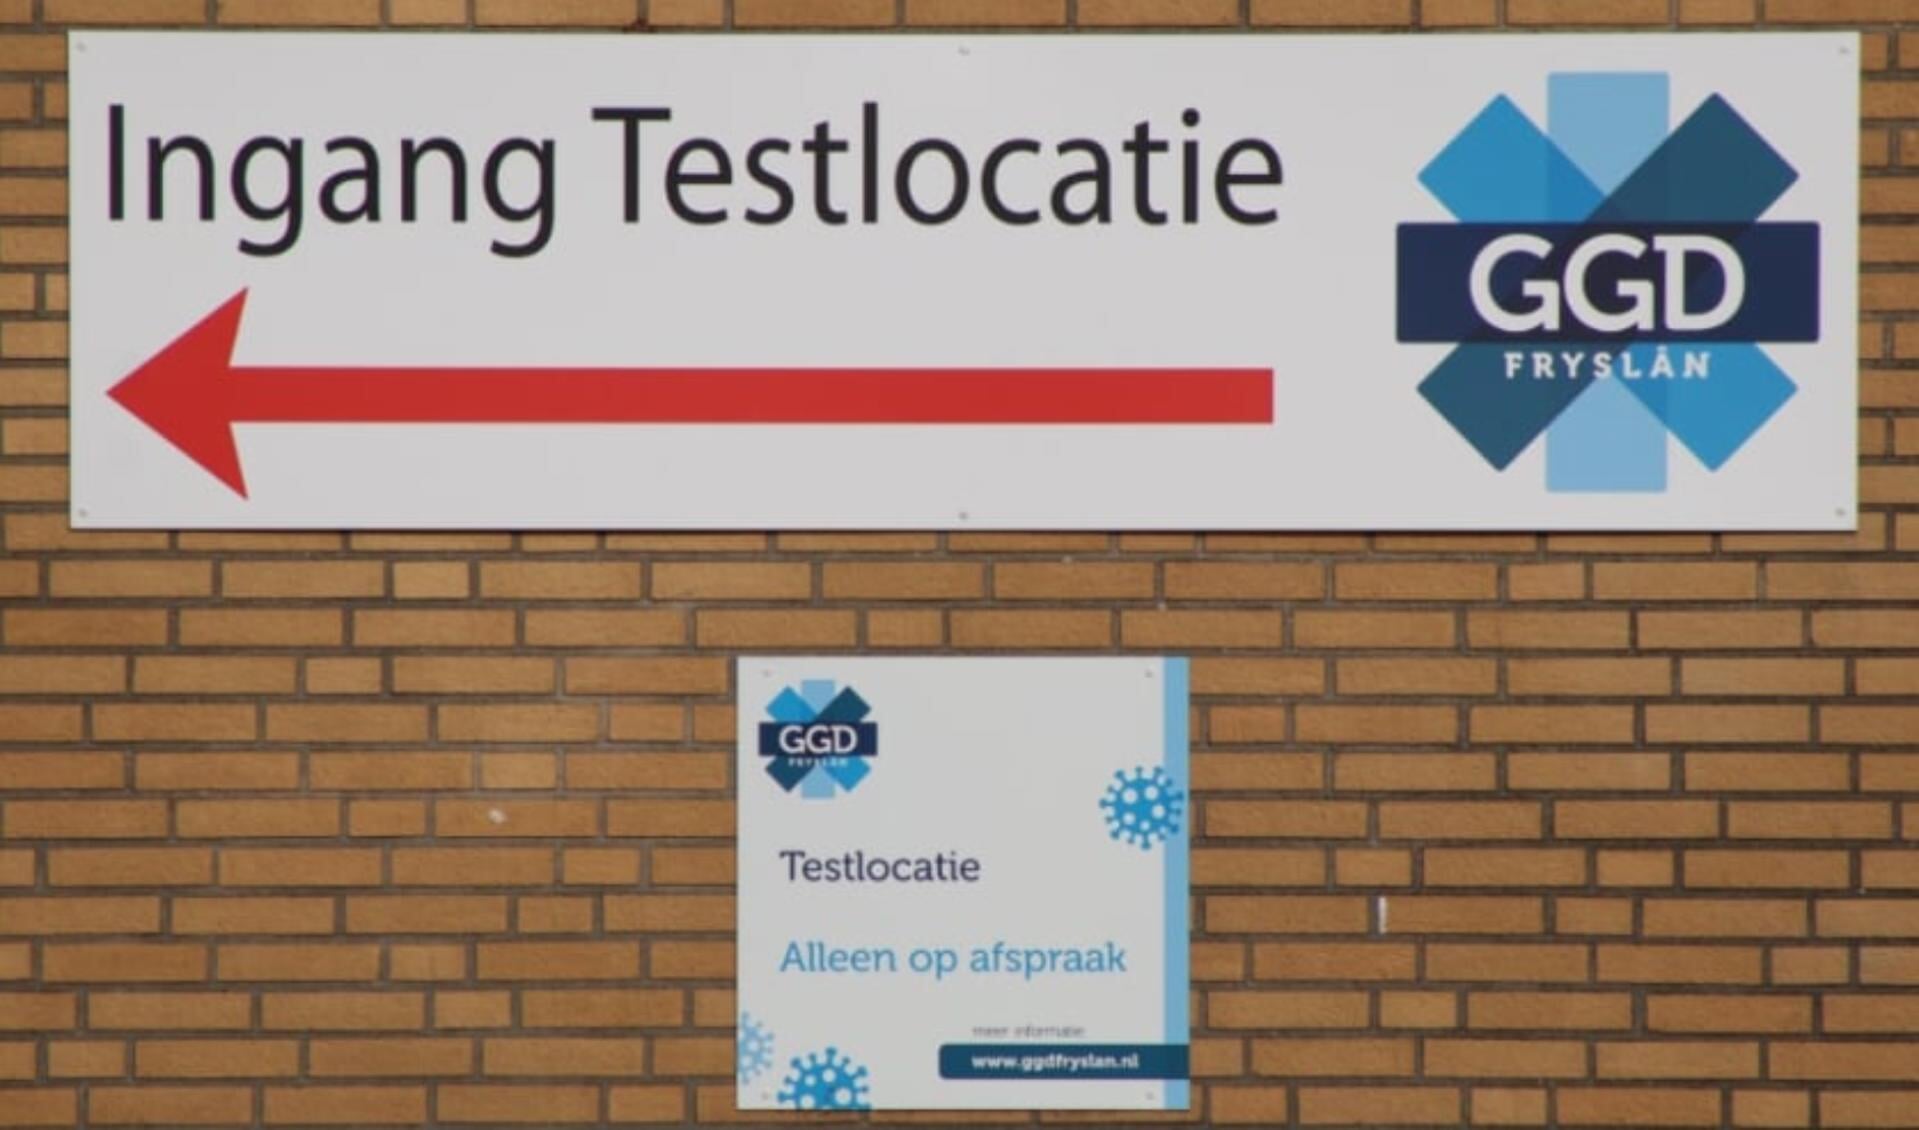 De borden bij één van de ingangen van een testlocatie van GGD Fryslân.